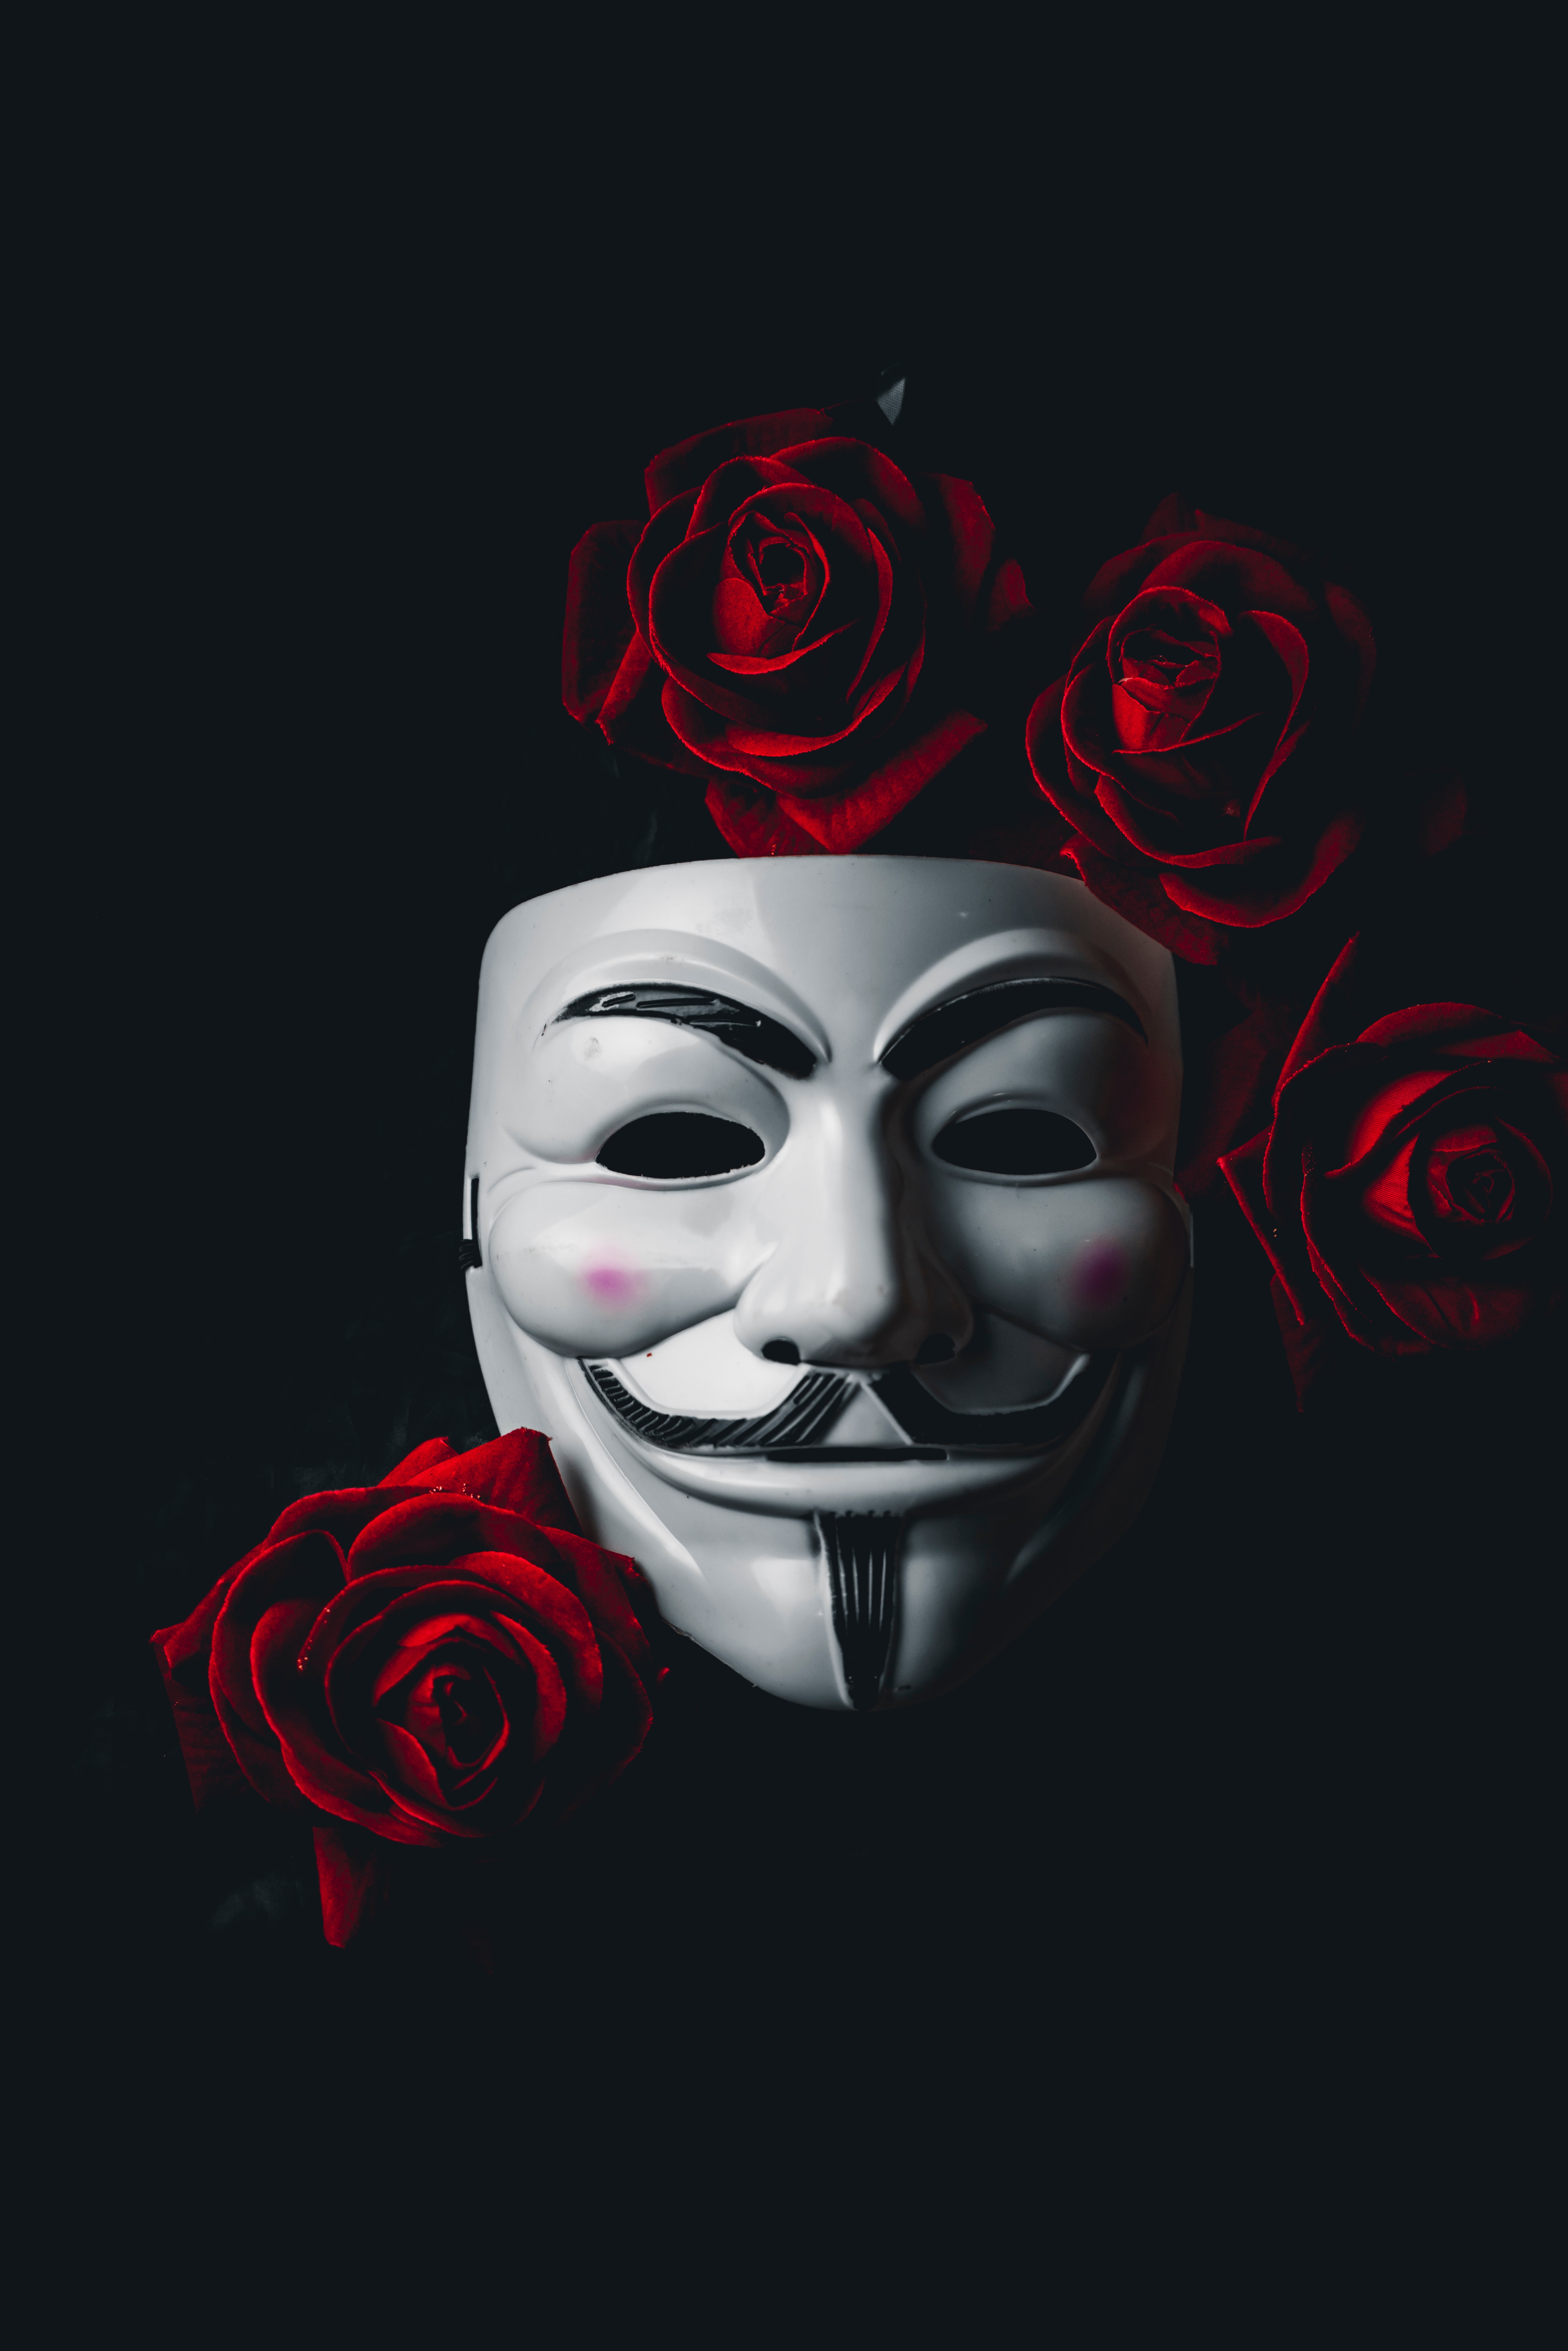 Маска Анонимуса. Заставки на телефон маски. Аноним. Анонимус. Хорошие маски на телефон